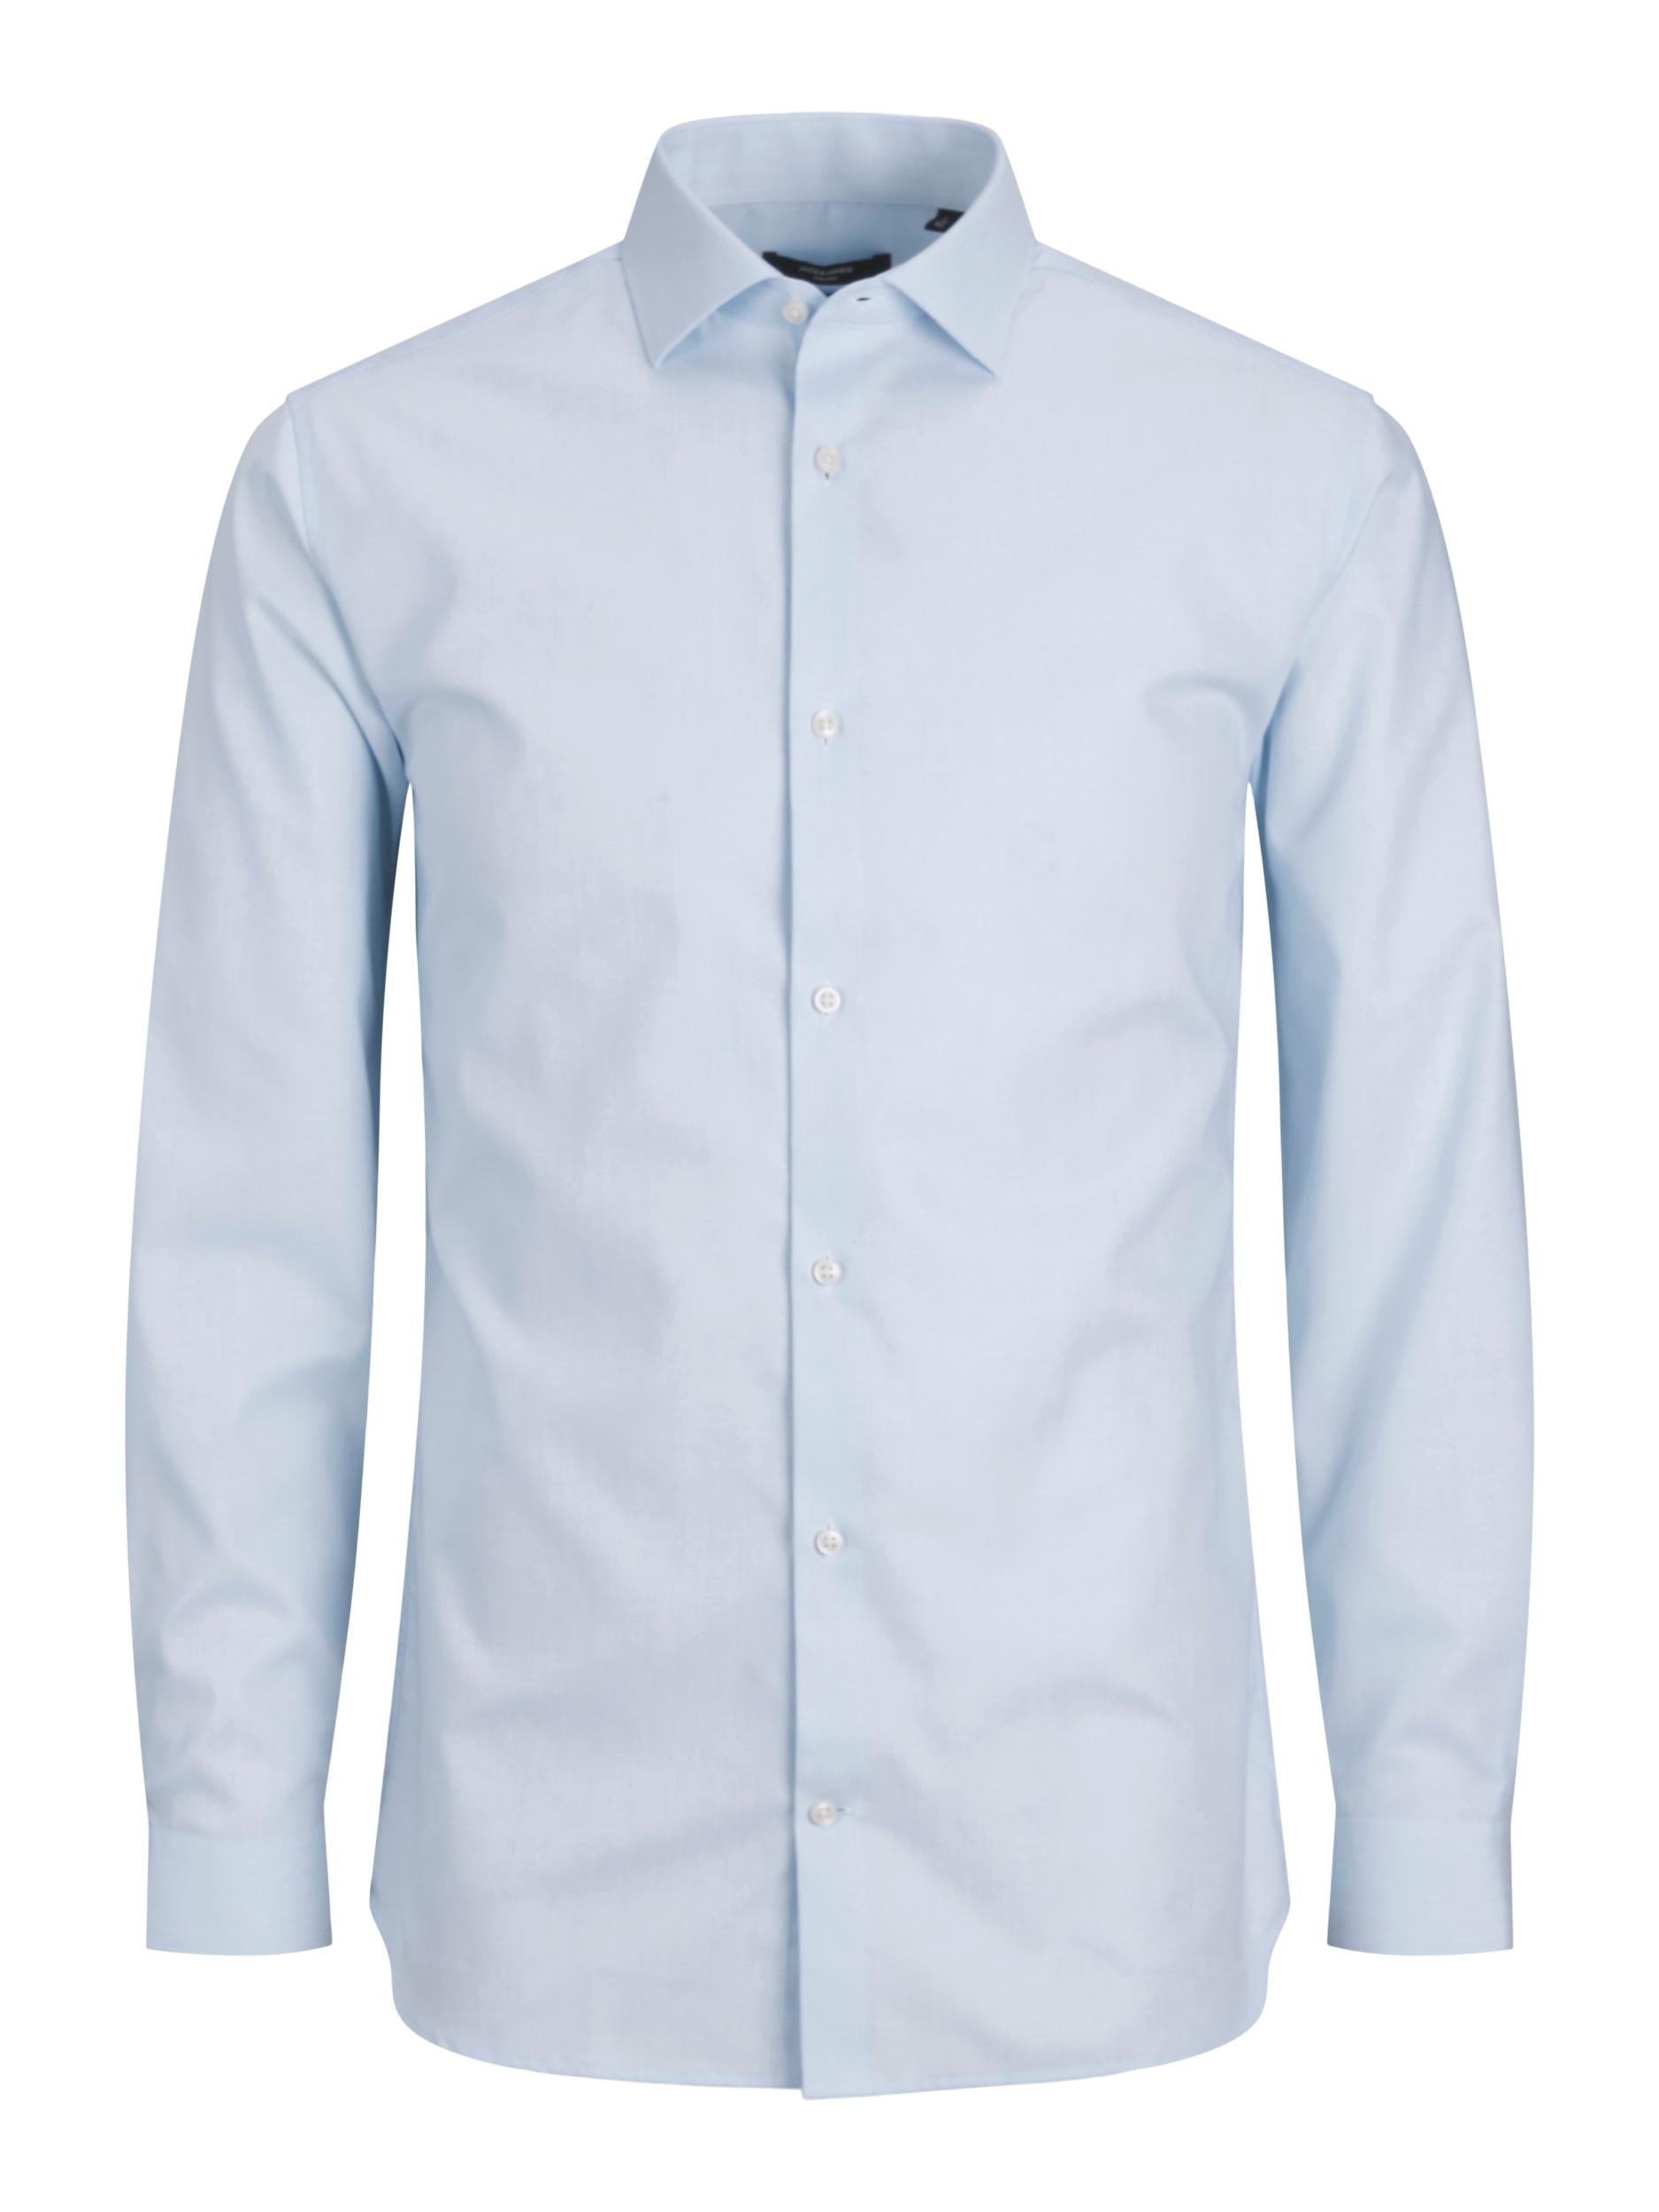 Men's Parker Cashmere Blue Shirt-Ghost Front View